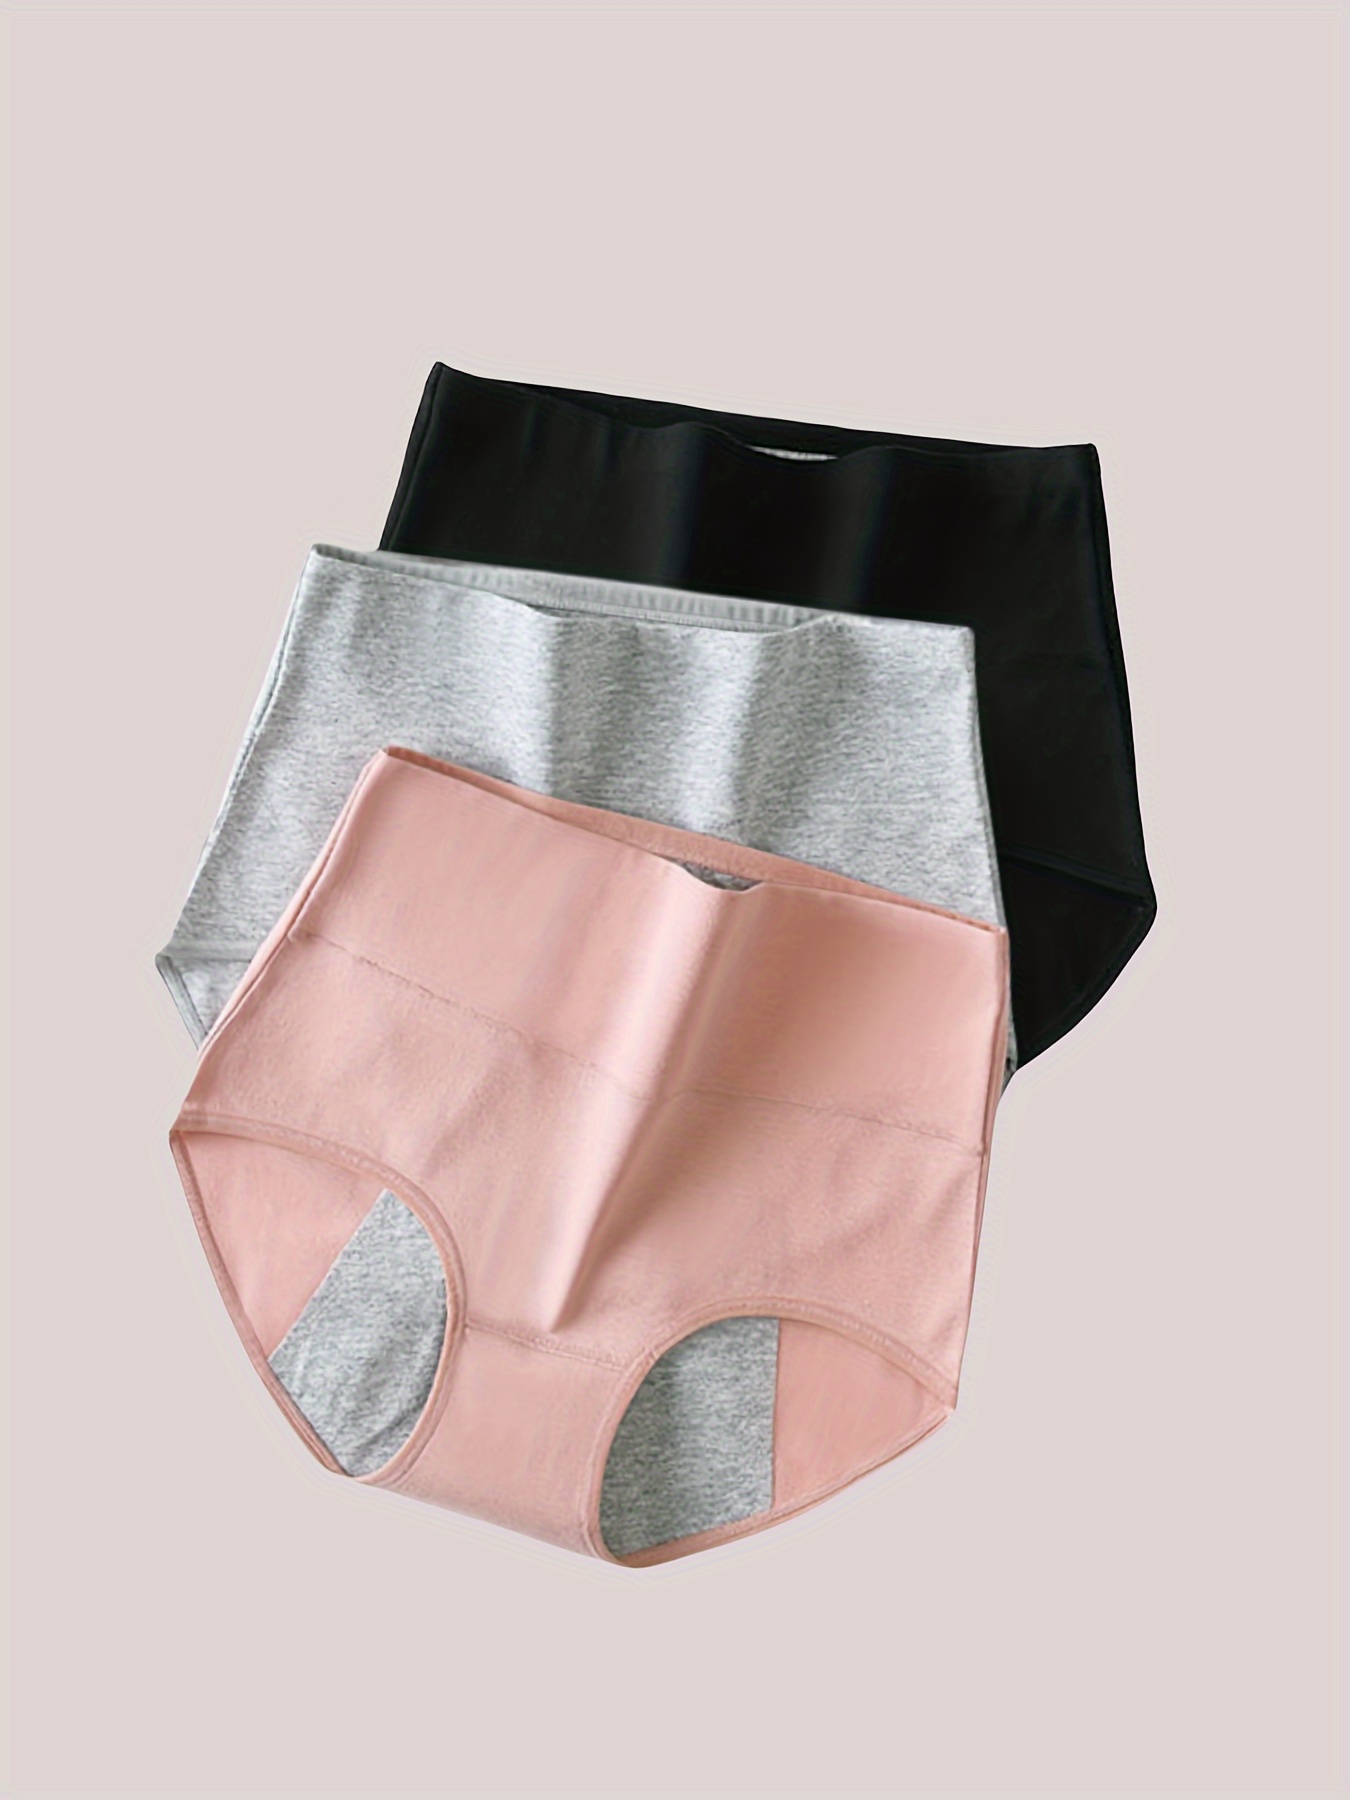 FOR WOMEN INCONTINENCE Leakproof Underwear,Leak Proof Pants' Protective  C2C5 $11.09 - PicClick AU